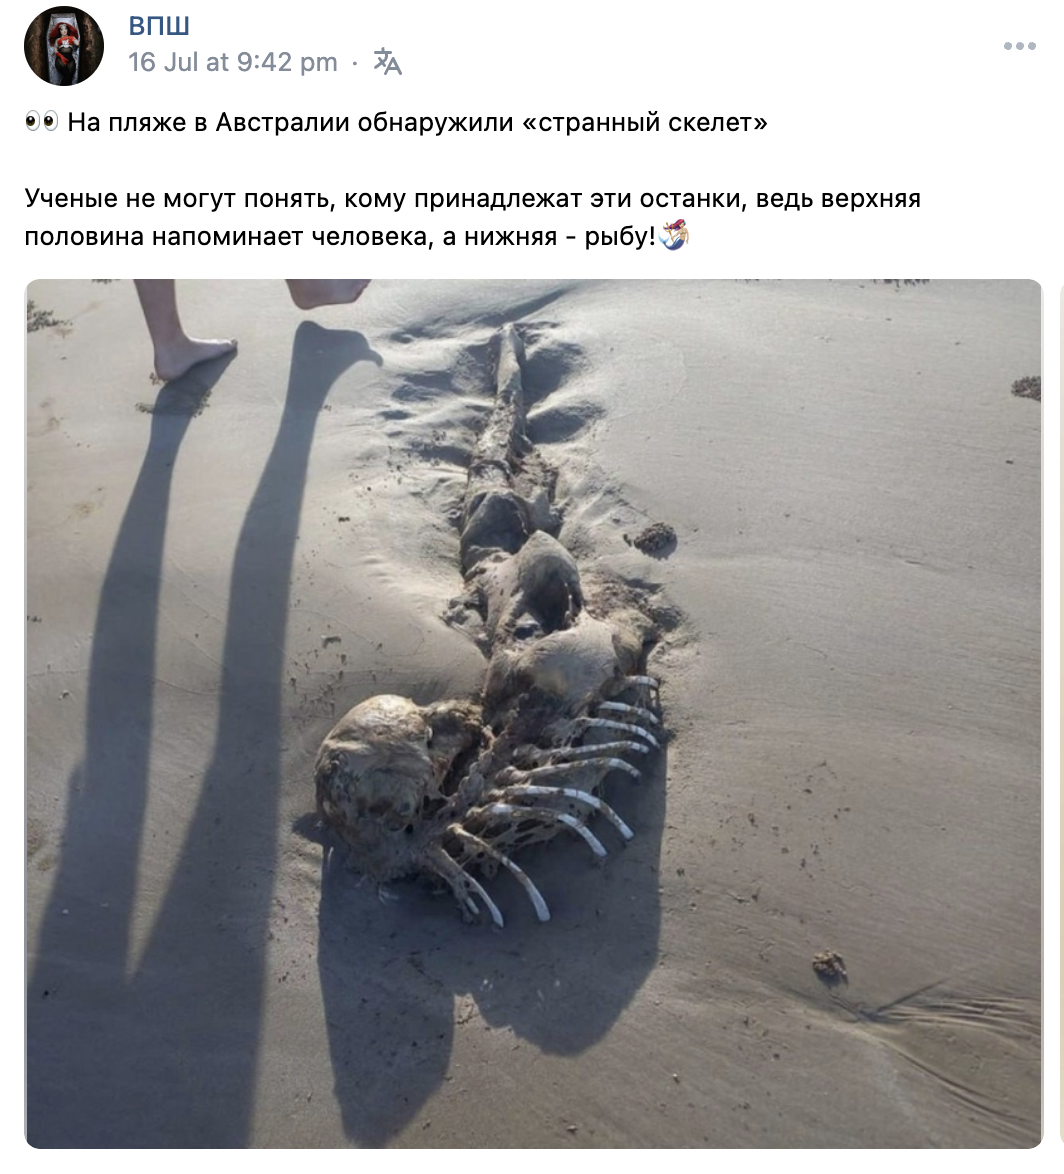 кости русалки нашли на пляже в Австралии